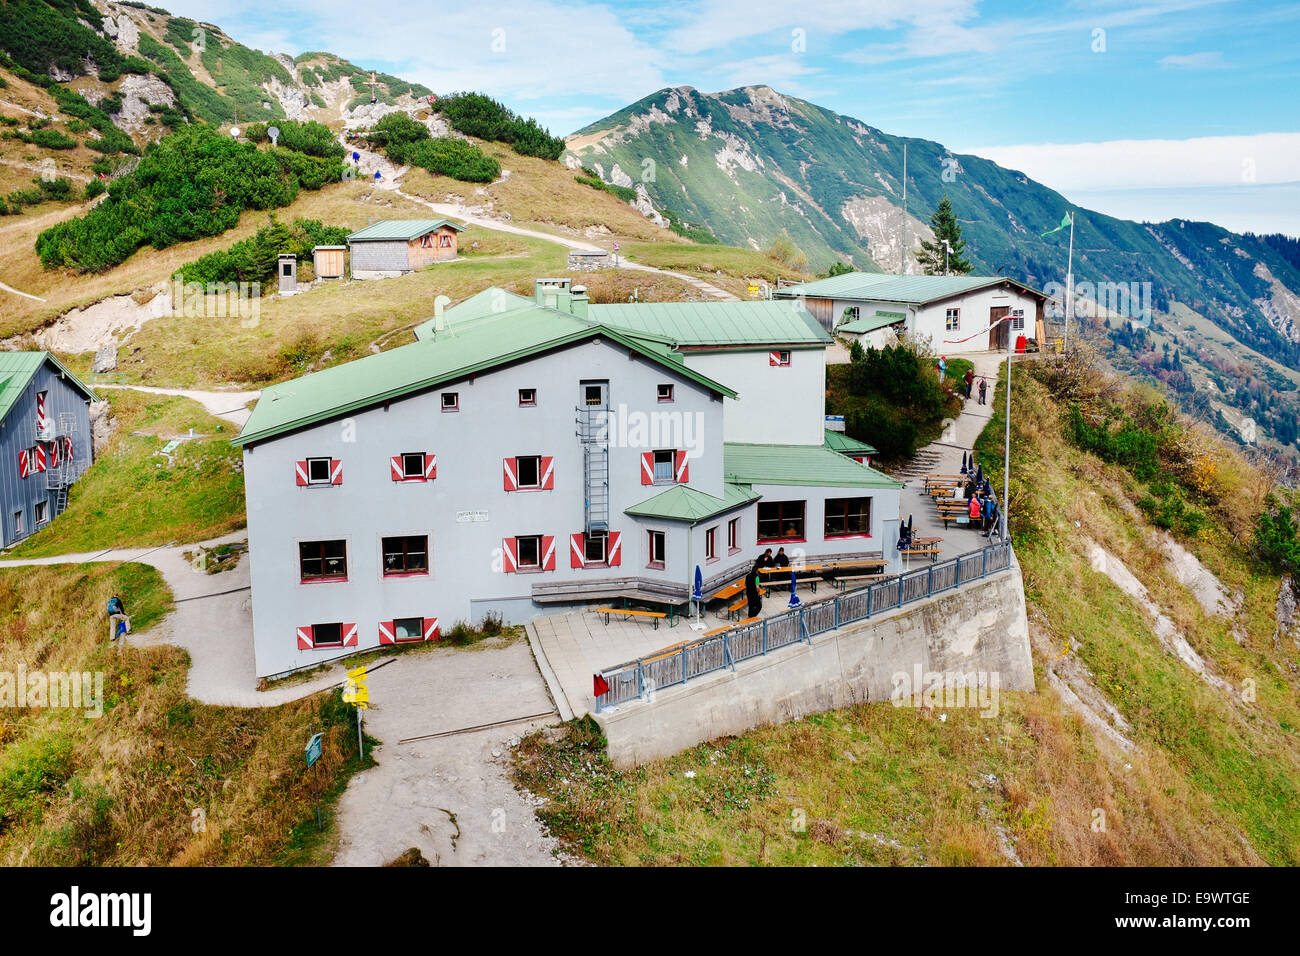 Stripsenjochhaus mountain lodge on Stripsenkopf, Wilder Kaiser, Tirol Austria Stock Photo